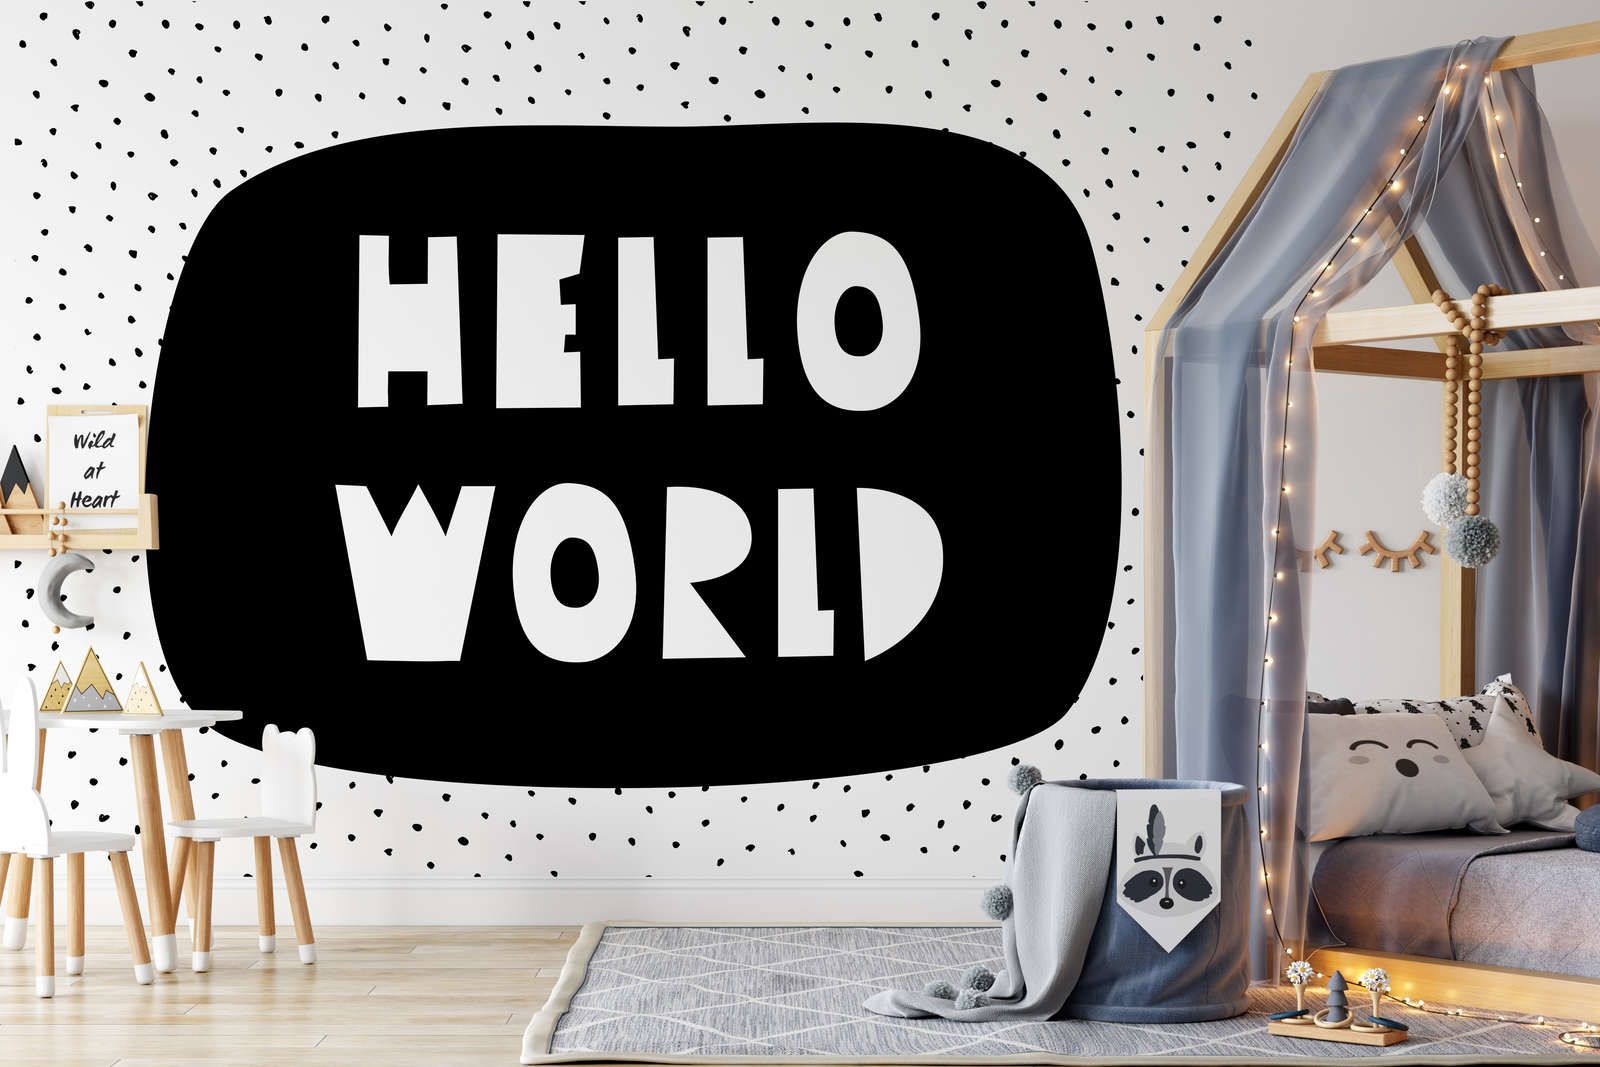             Digital behang voor kinderkamer met opschrift "Hello World" - Glad & licht glanzend vlies
        